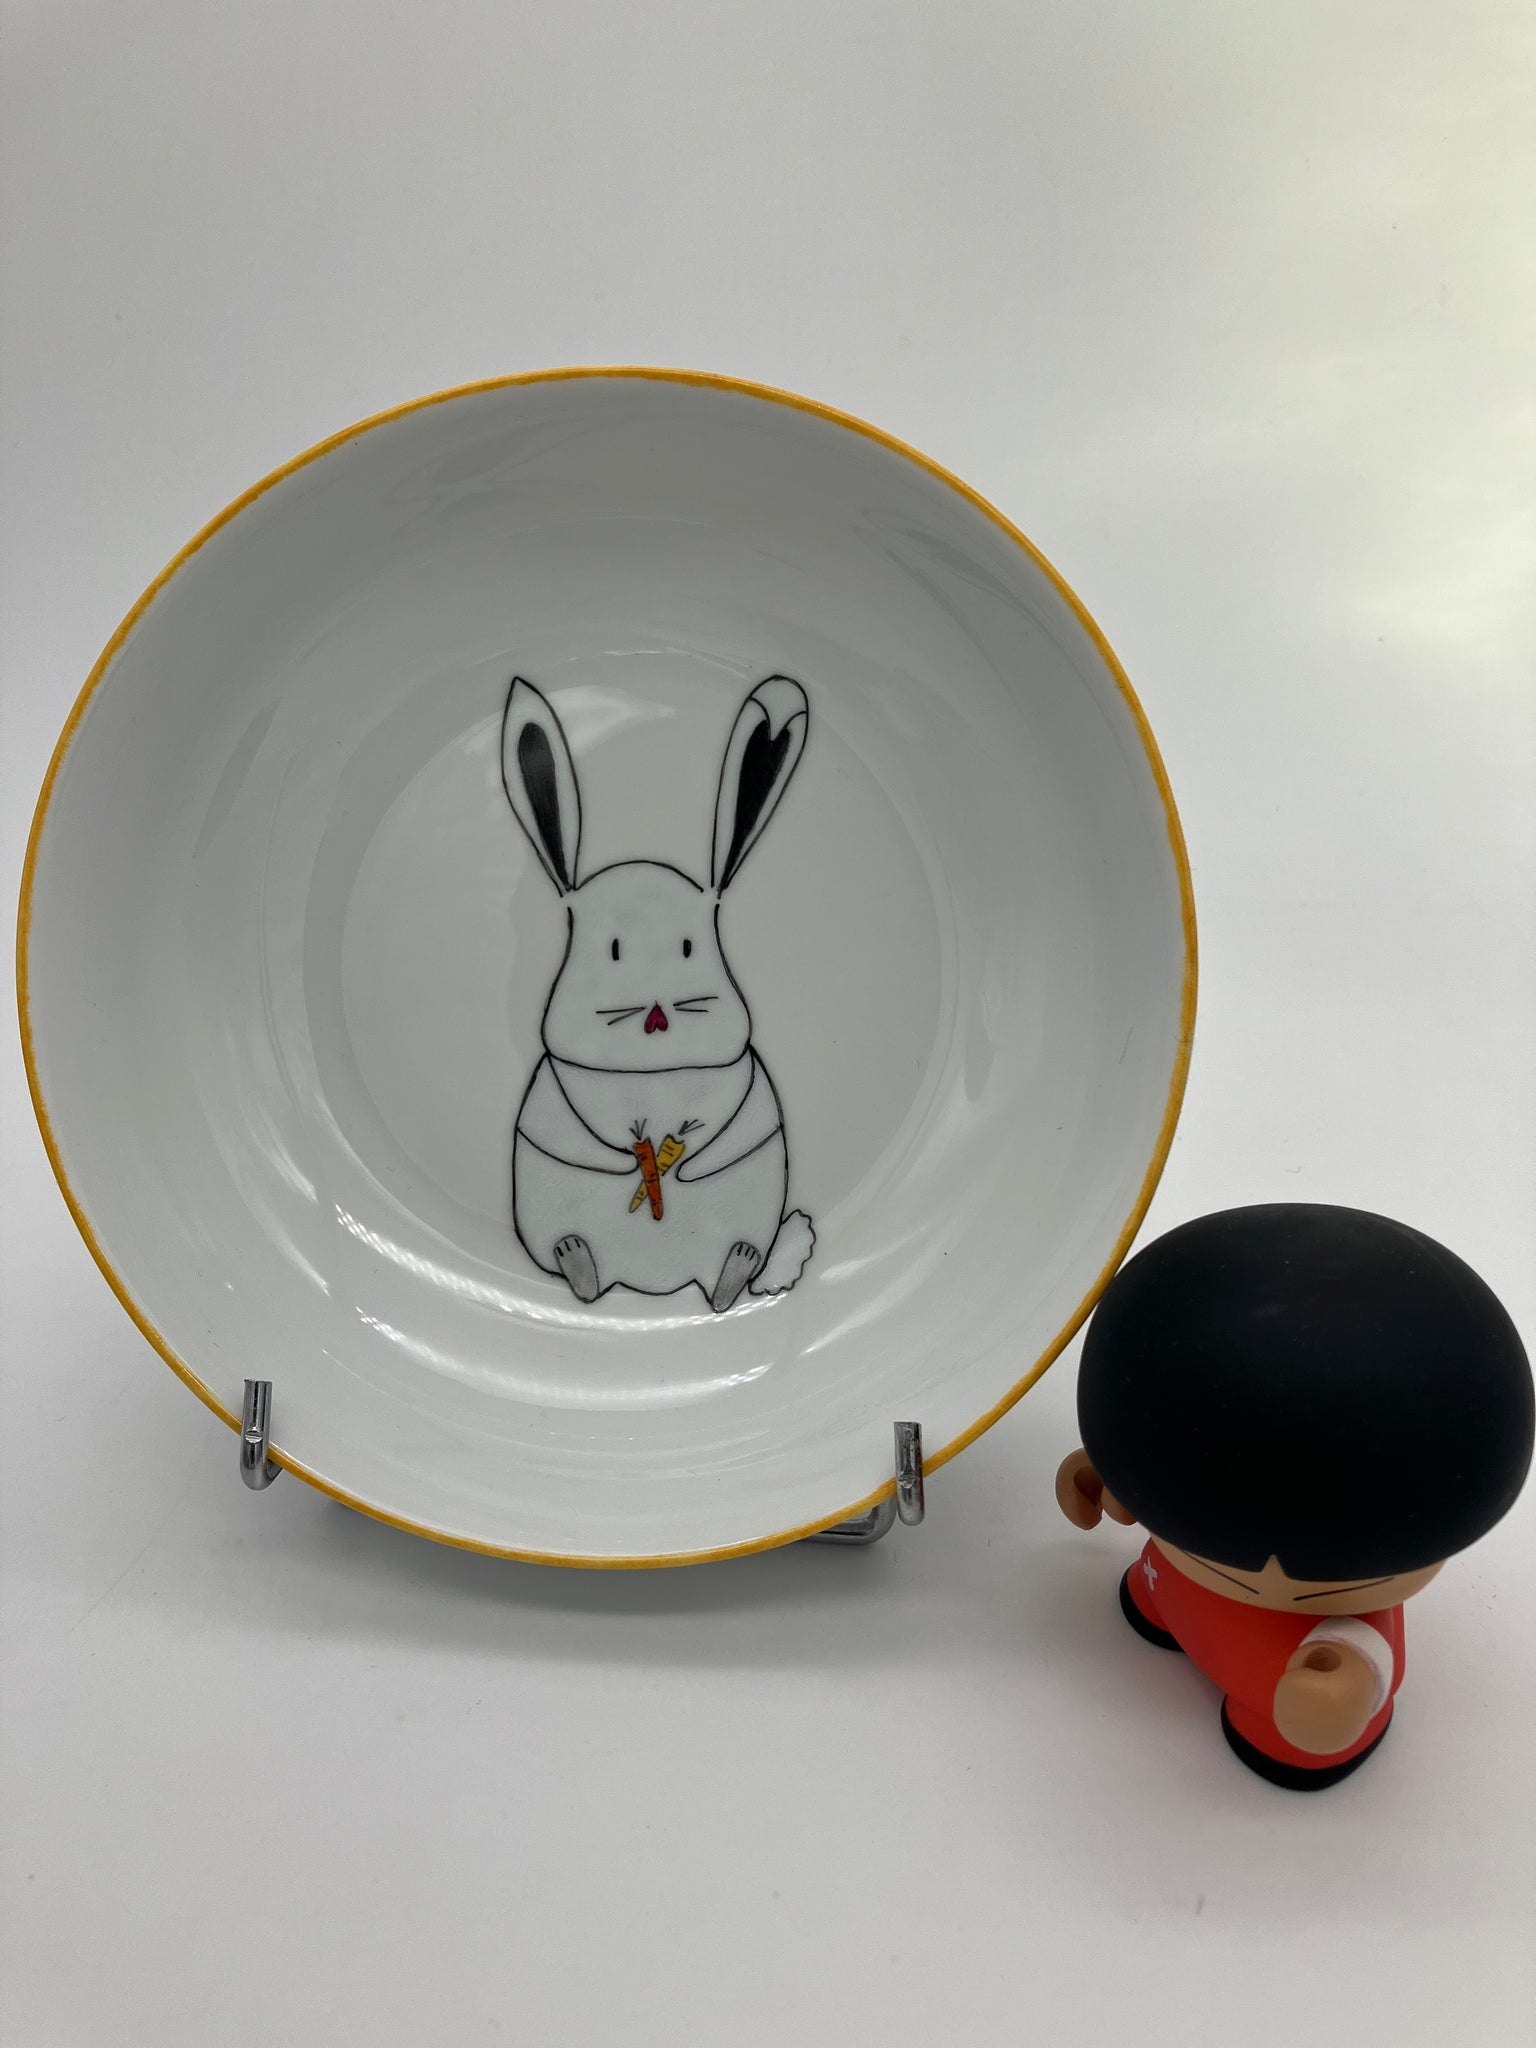 Assiette creuse porcelaine -motif lapin tenant deux carottes-bordure assiette jaune